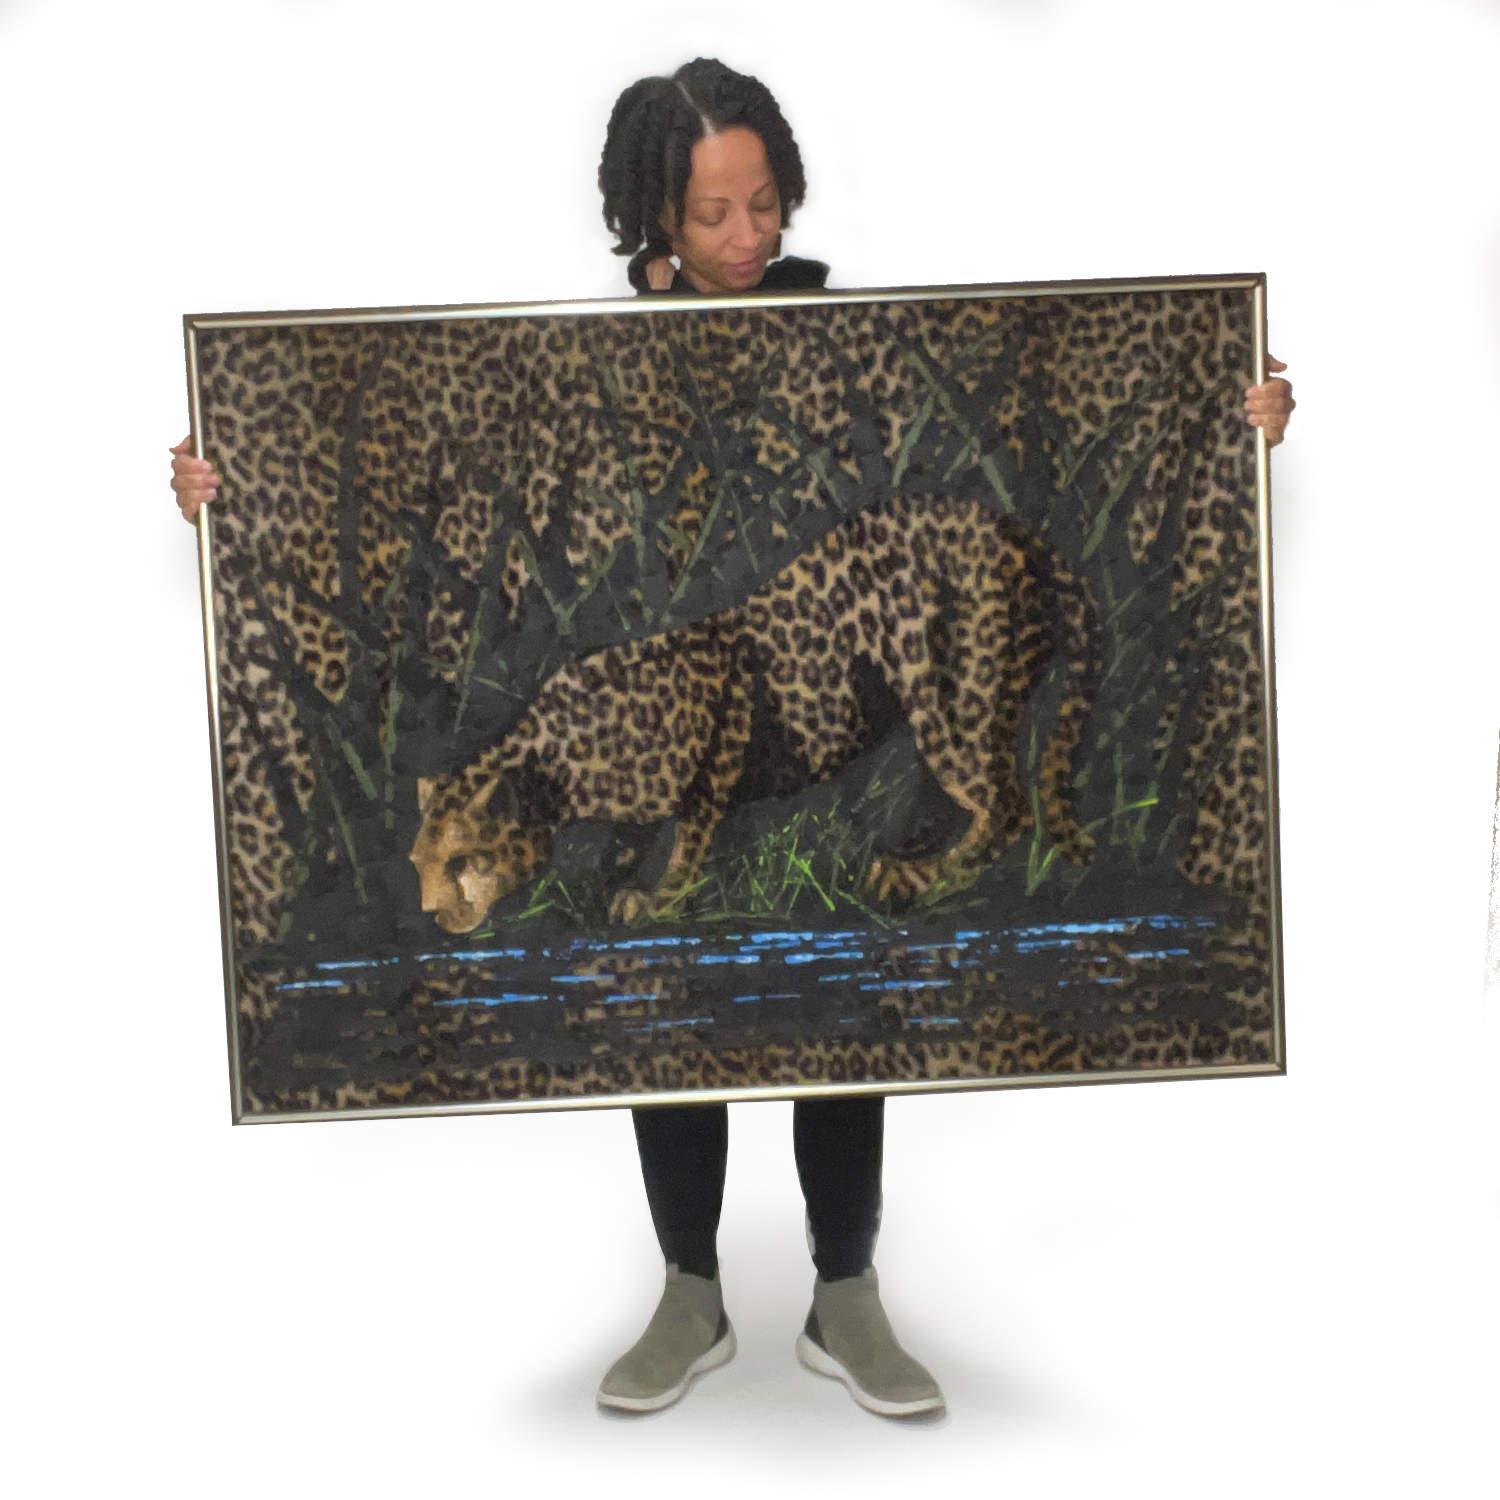 Sie haben vielleicht schon Samtbilder gesehen... aber haben Sie schon einmal ein Leopardenbild auf Kunstfell gesehen? Dieses Vintage-Gemälde einer Großkatze aus den 1970er Jahren verwendet Leopardenfellimitat als Leinwand. Signiert 